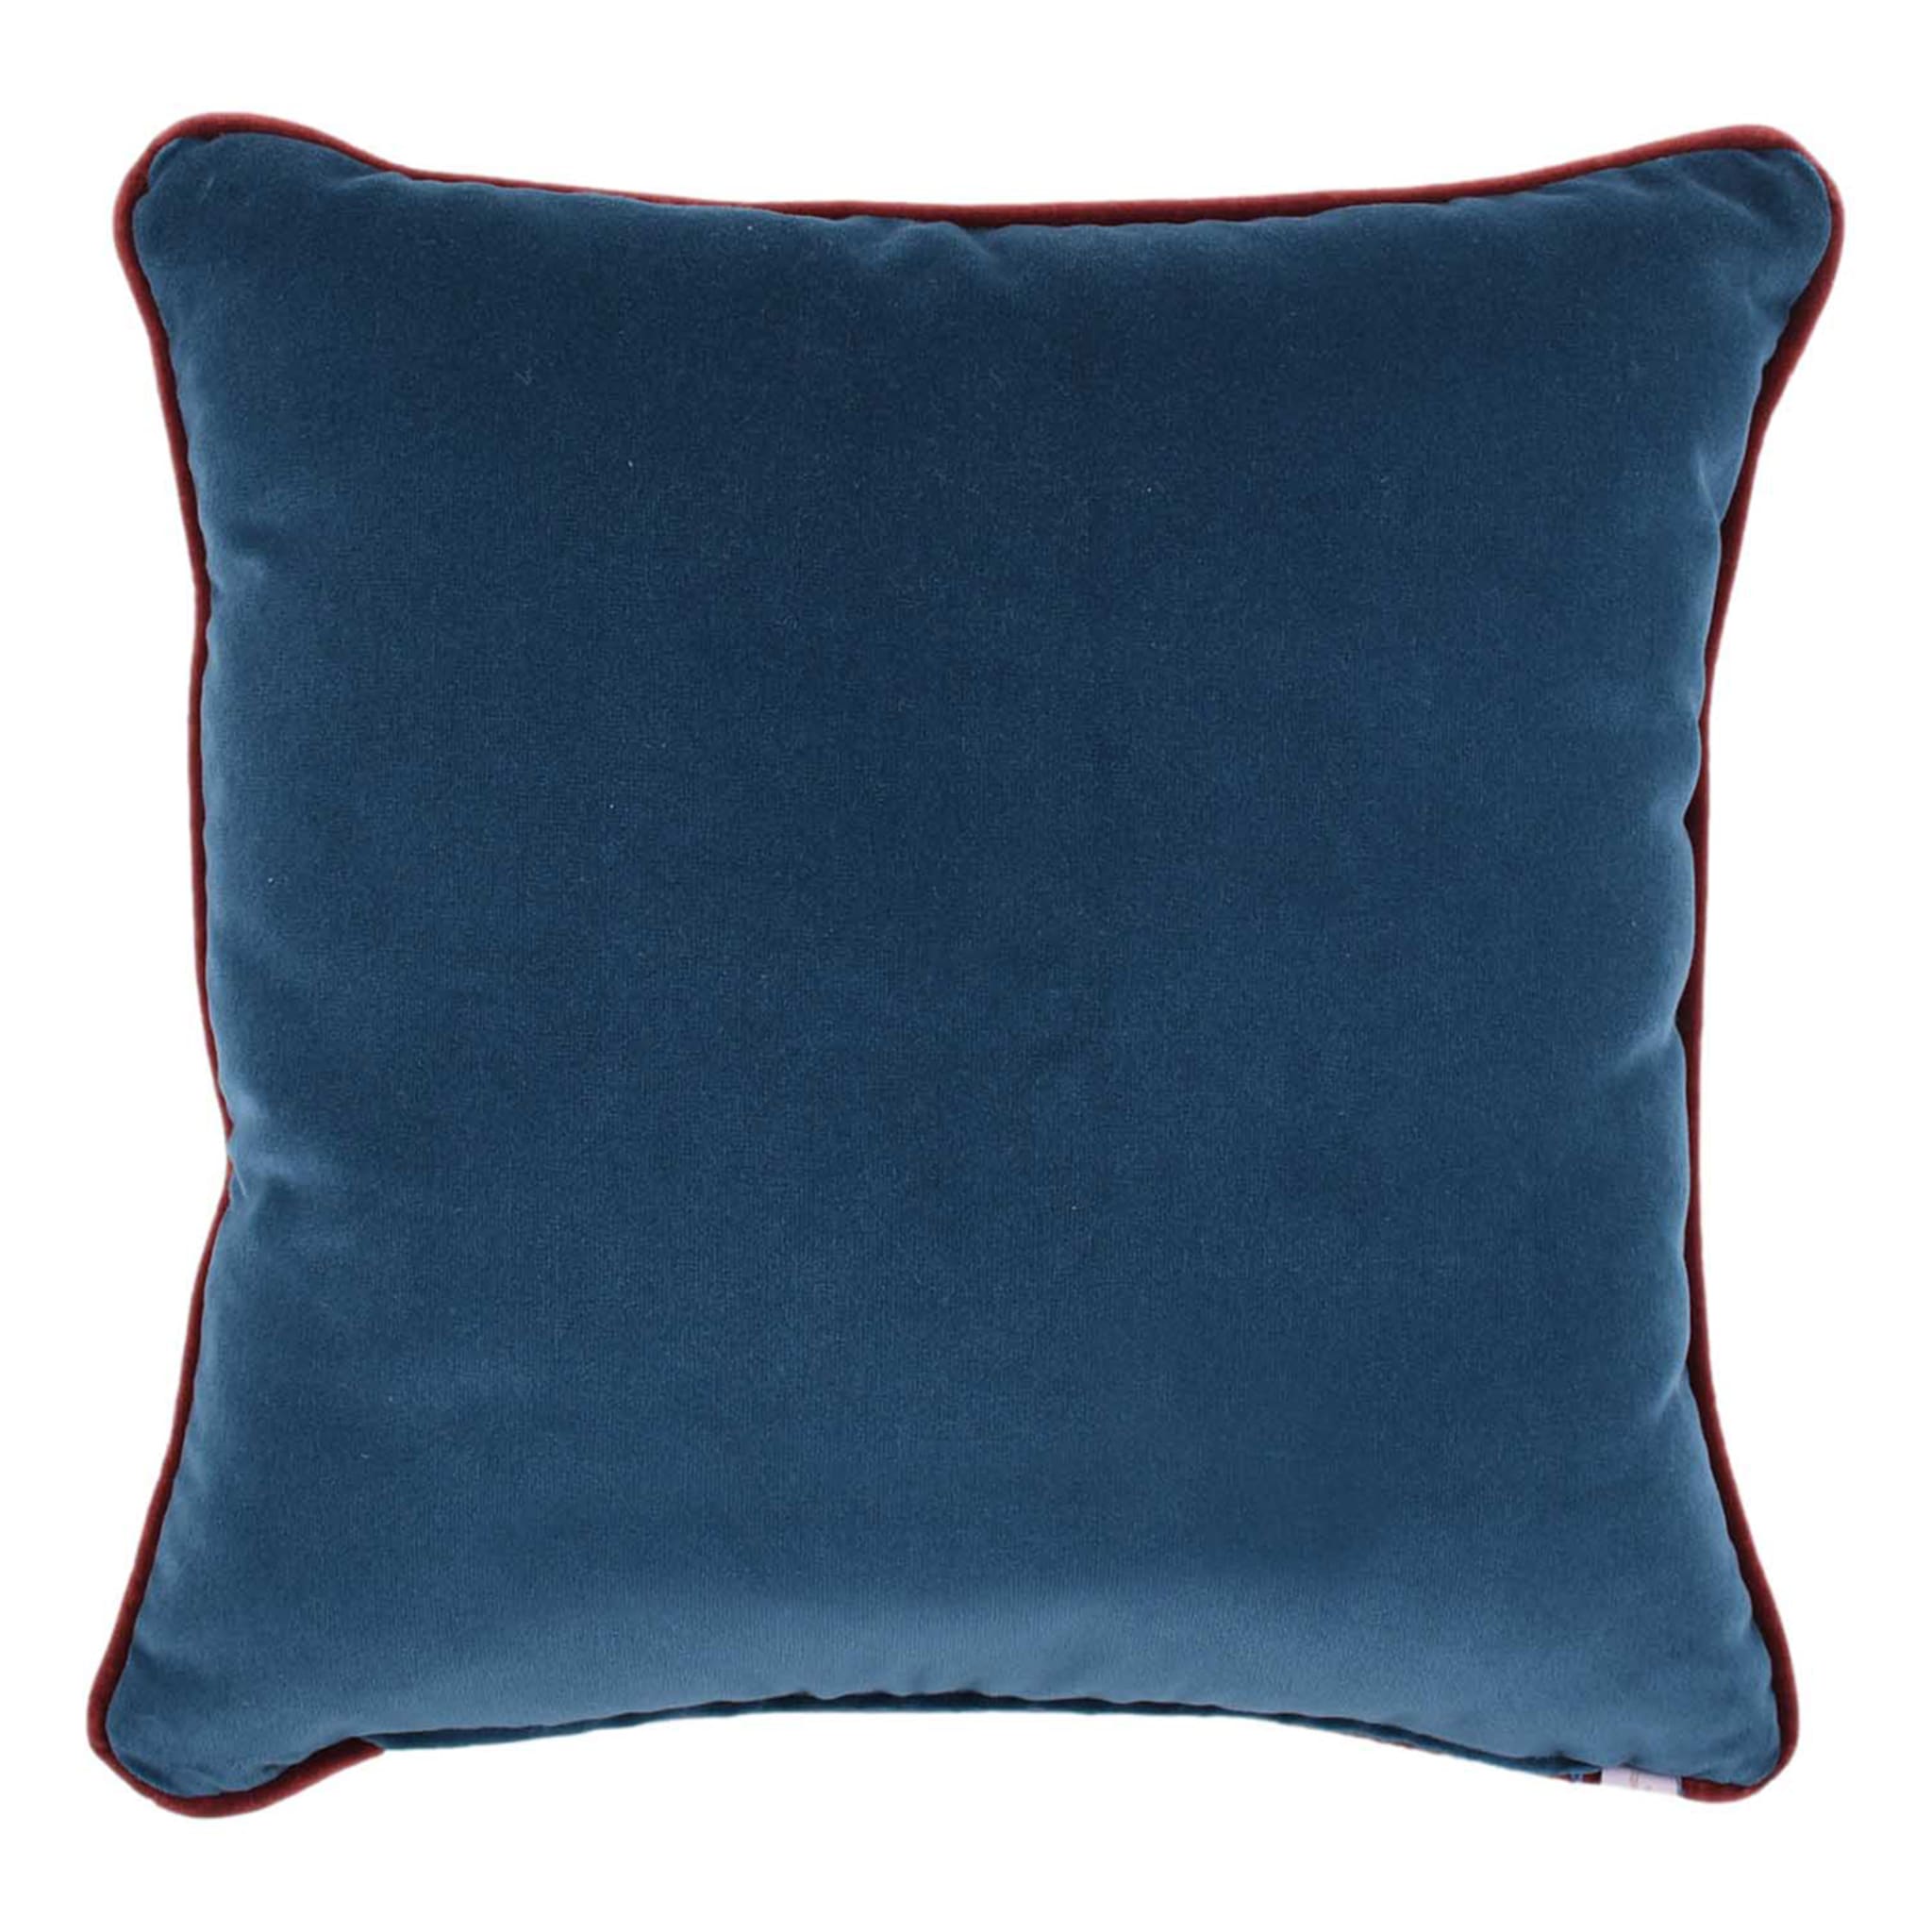 Cuscino Carrè turchese e blu in tessuto jacquard a pois - Vista alternativa 1